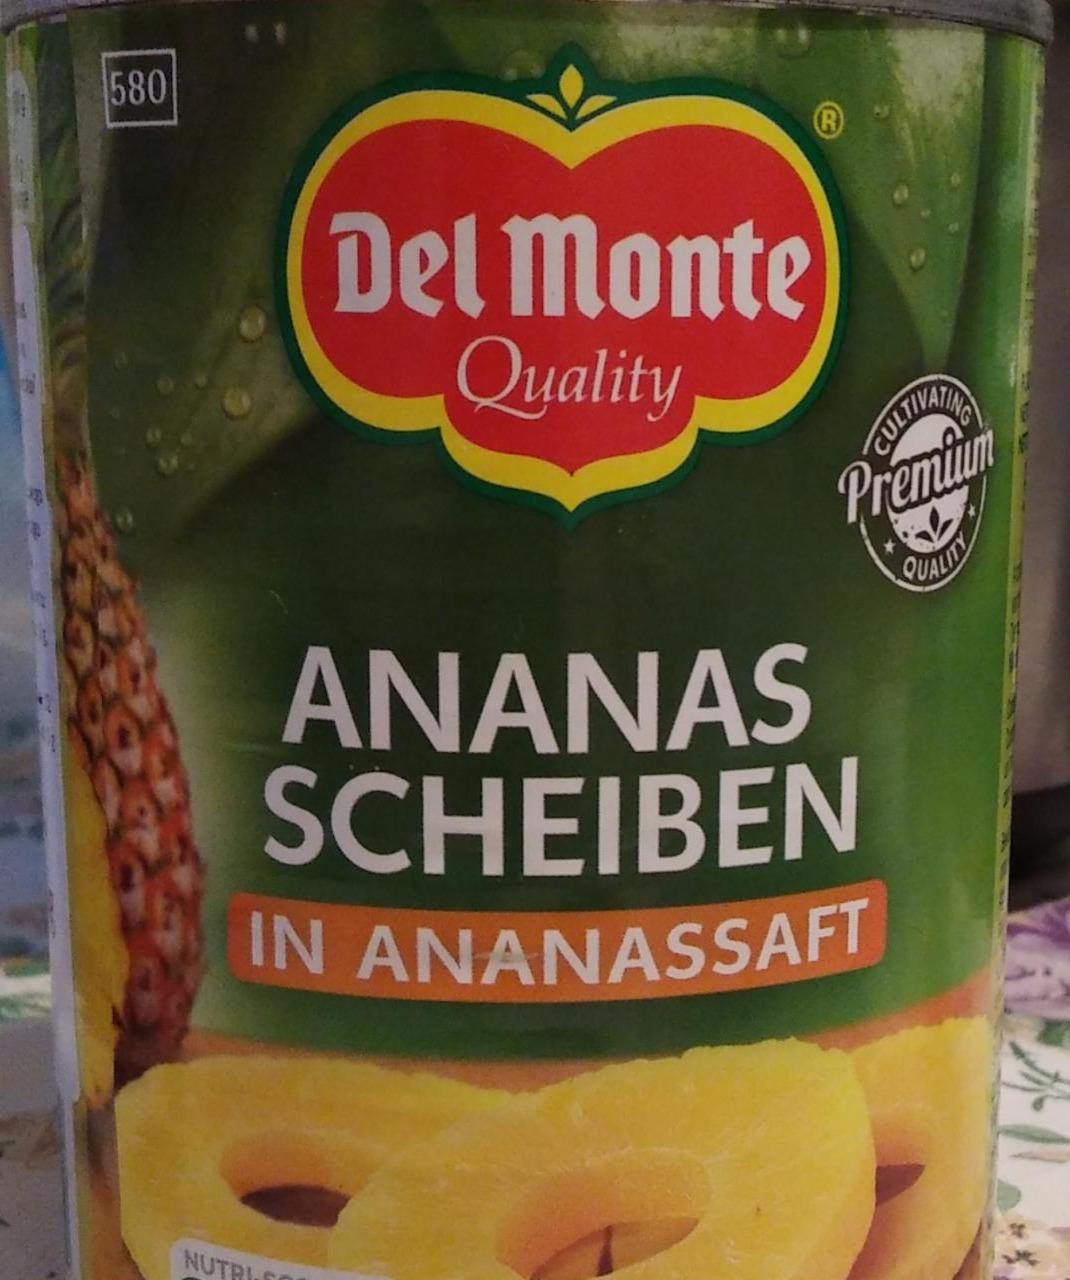 Fotografie - Ananas scheiben in ananassaft Del Monte Quality